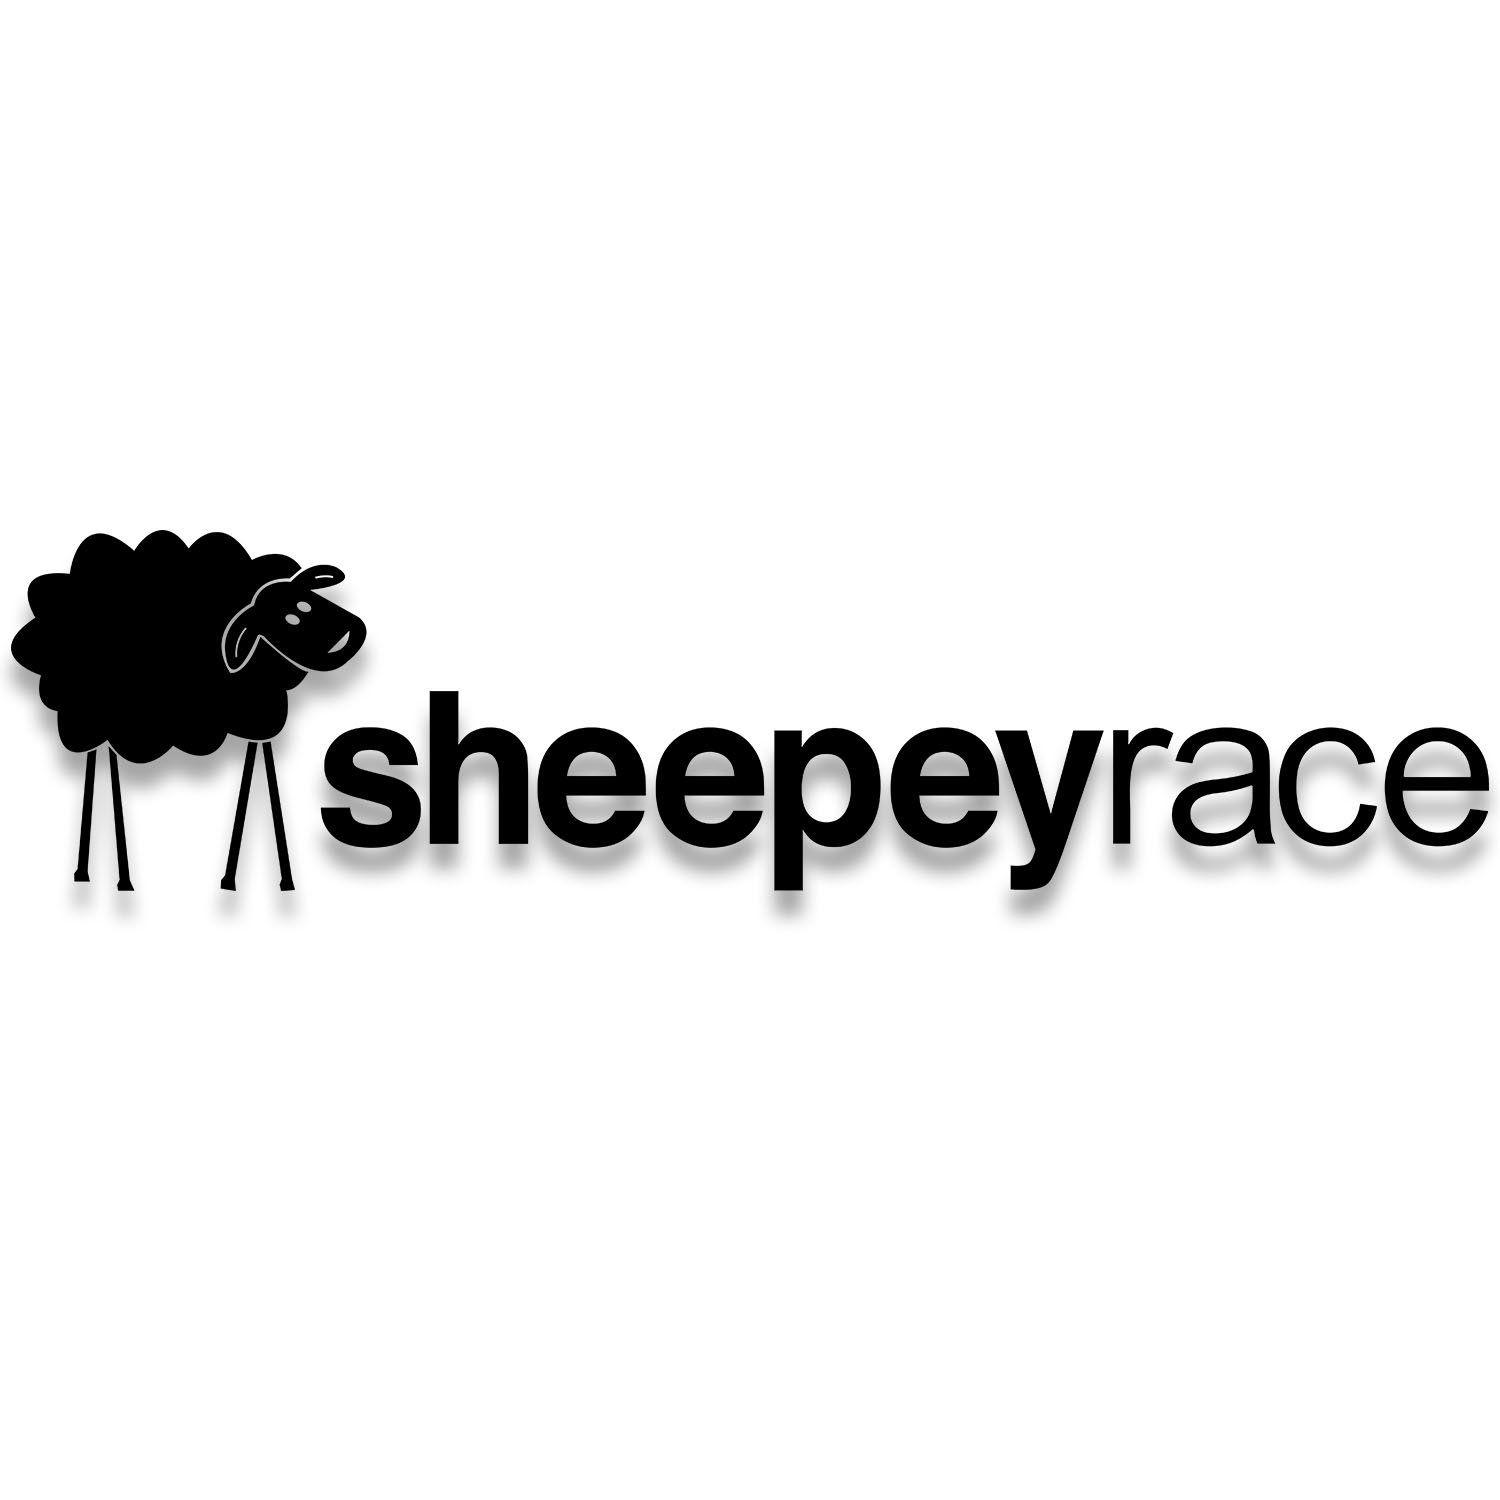 X2 Logo - Sheepey Race Door Decal 12